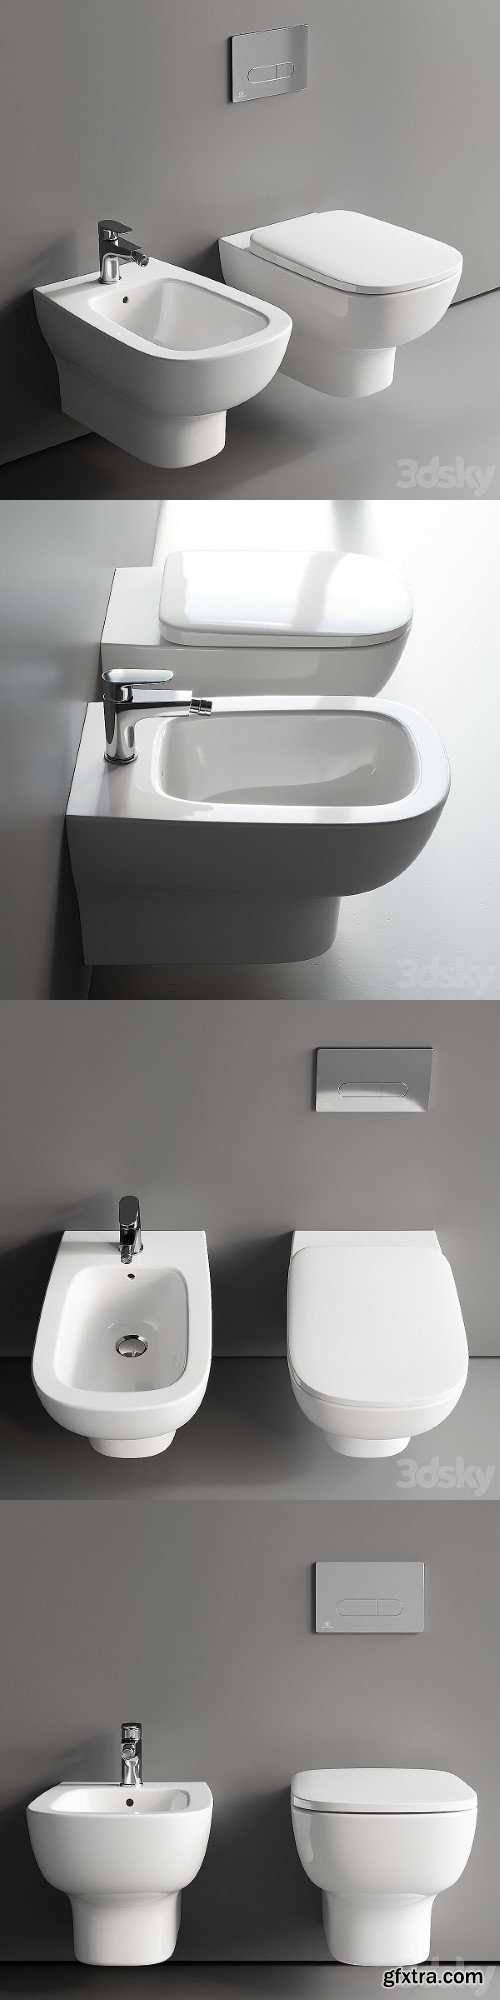 Ideal Standard Esedra Wall Hung WC